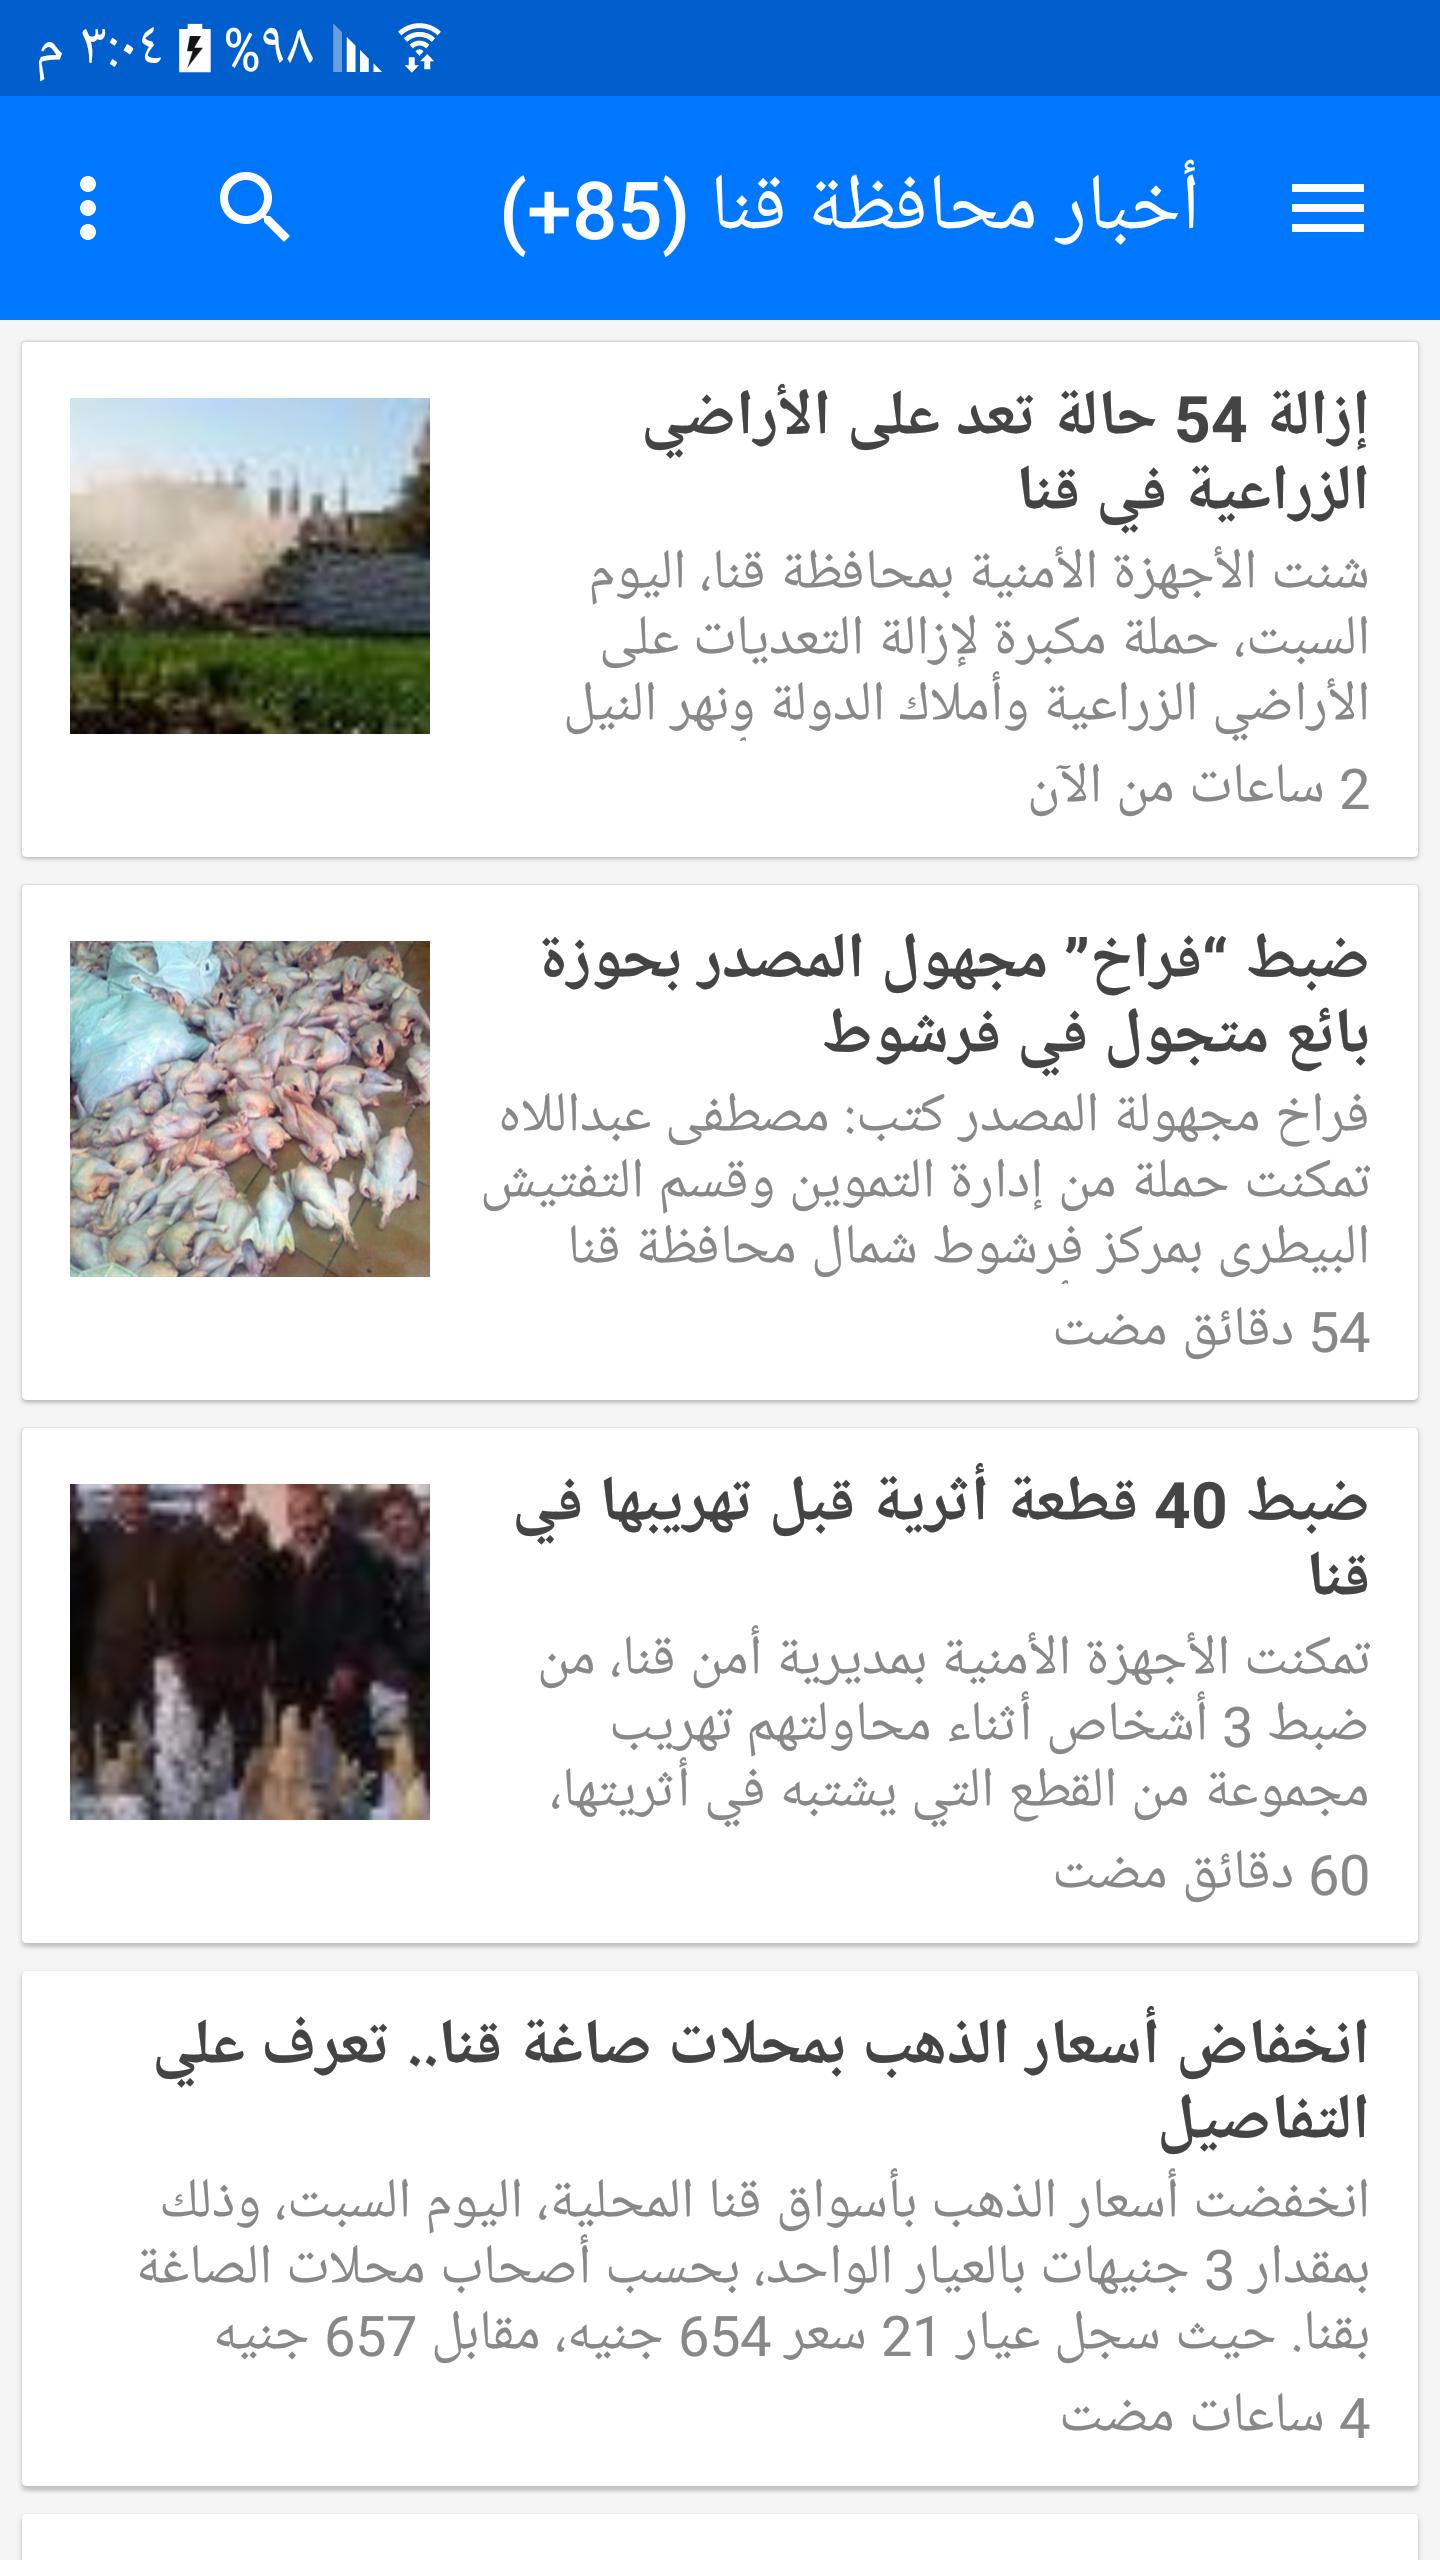 أخبار محافظة قنا اليوم for Android - APK Download